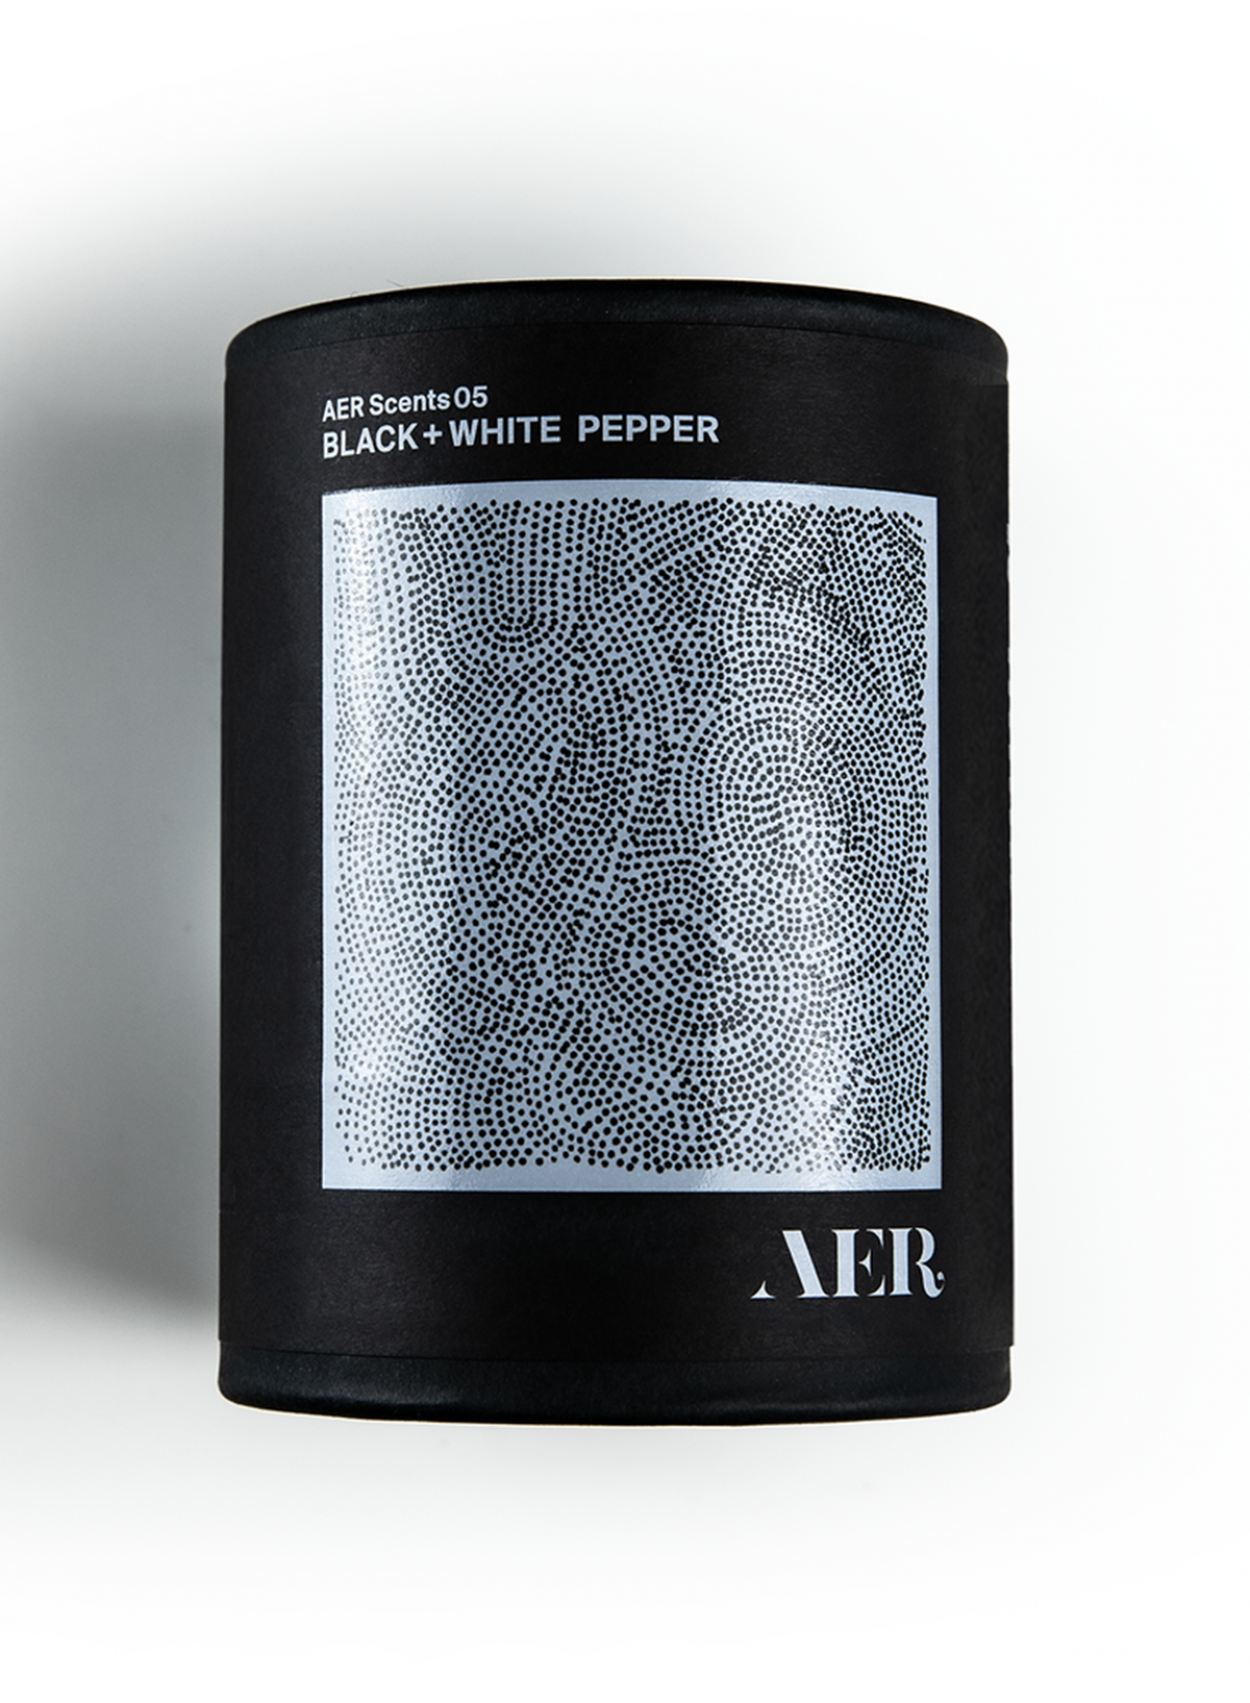 05, Black + White Pepper - AER